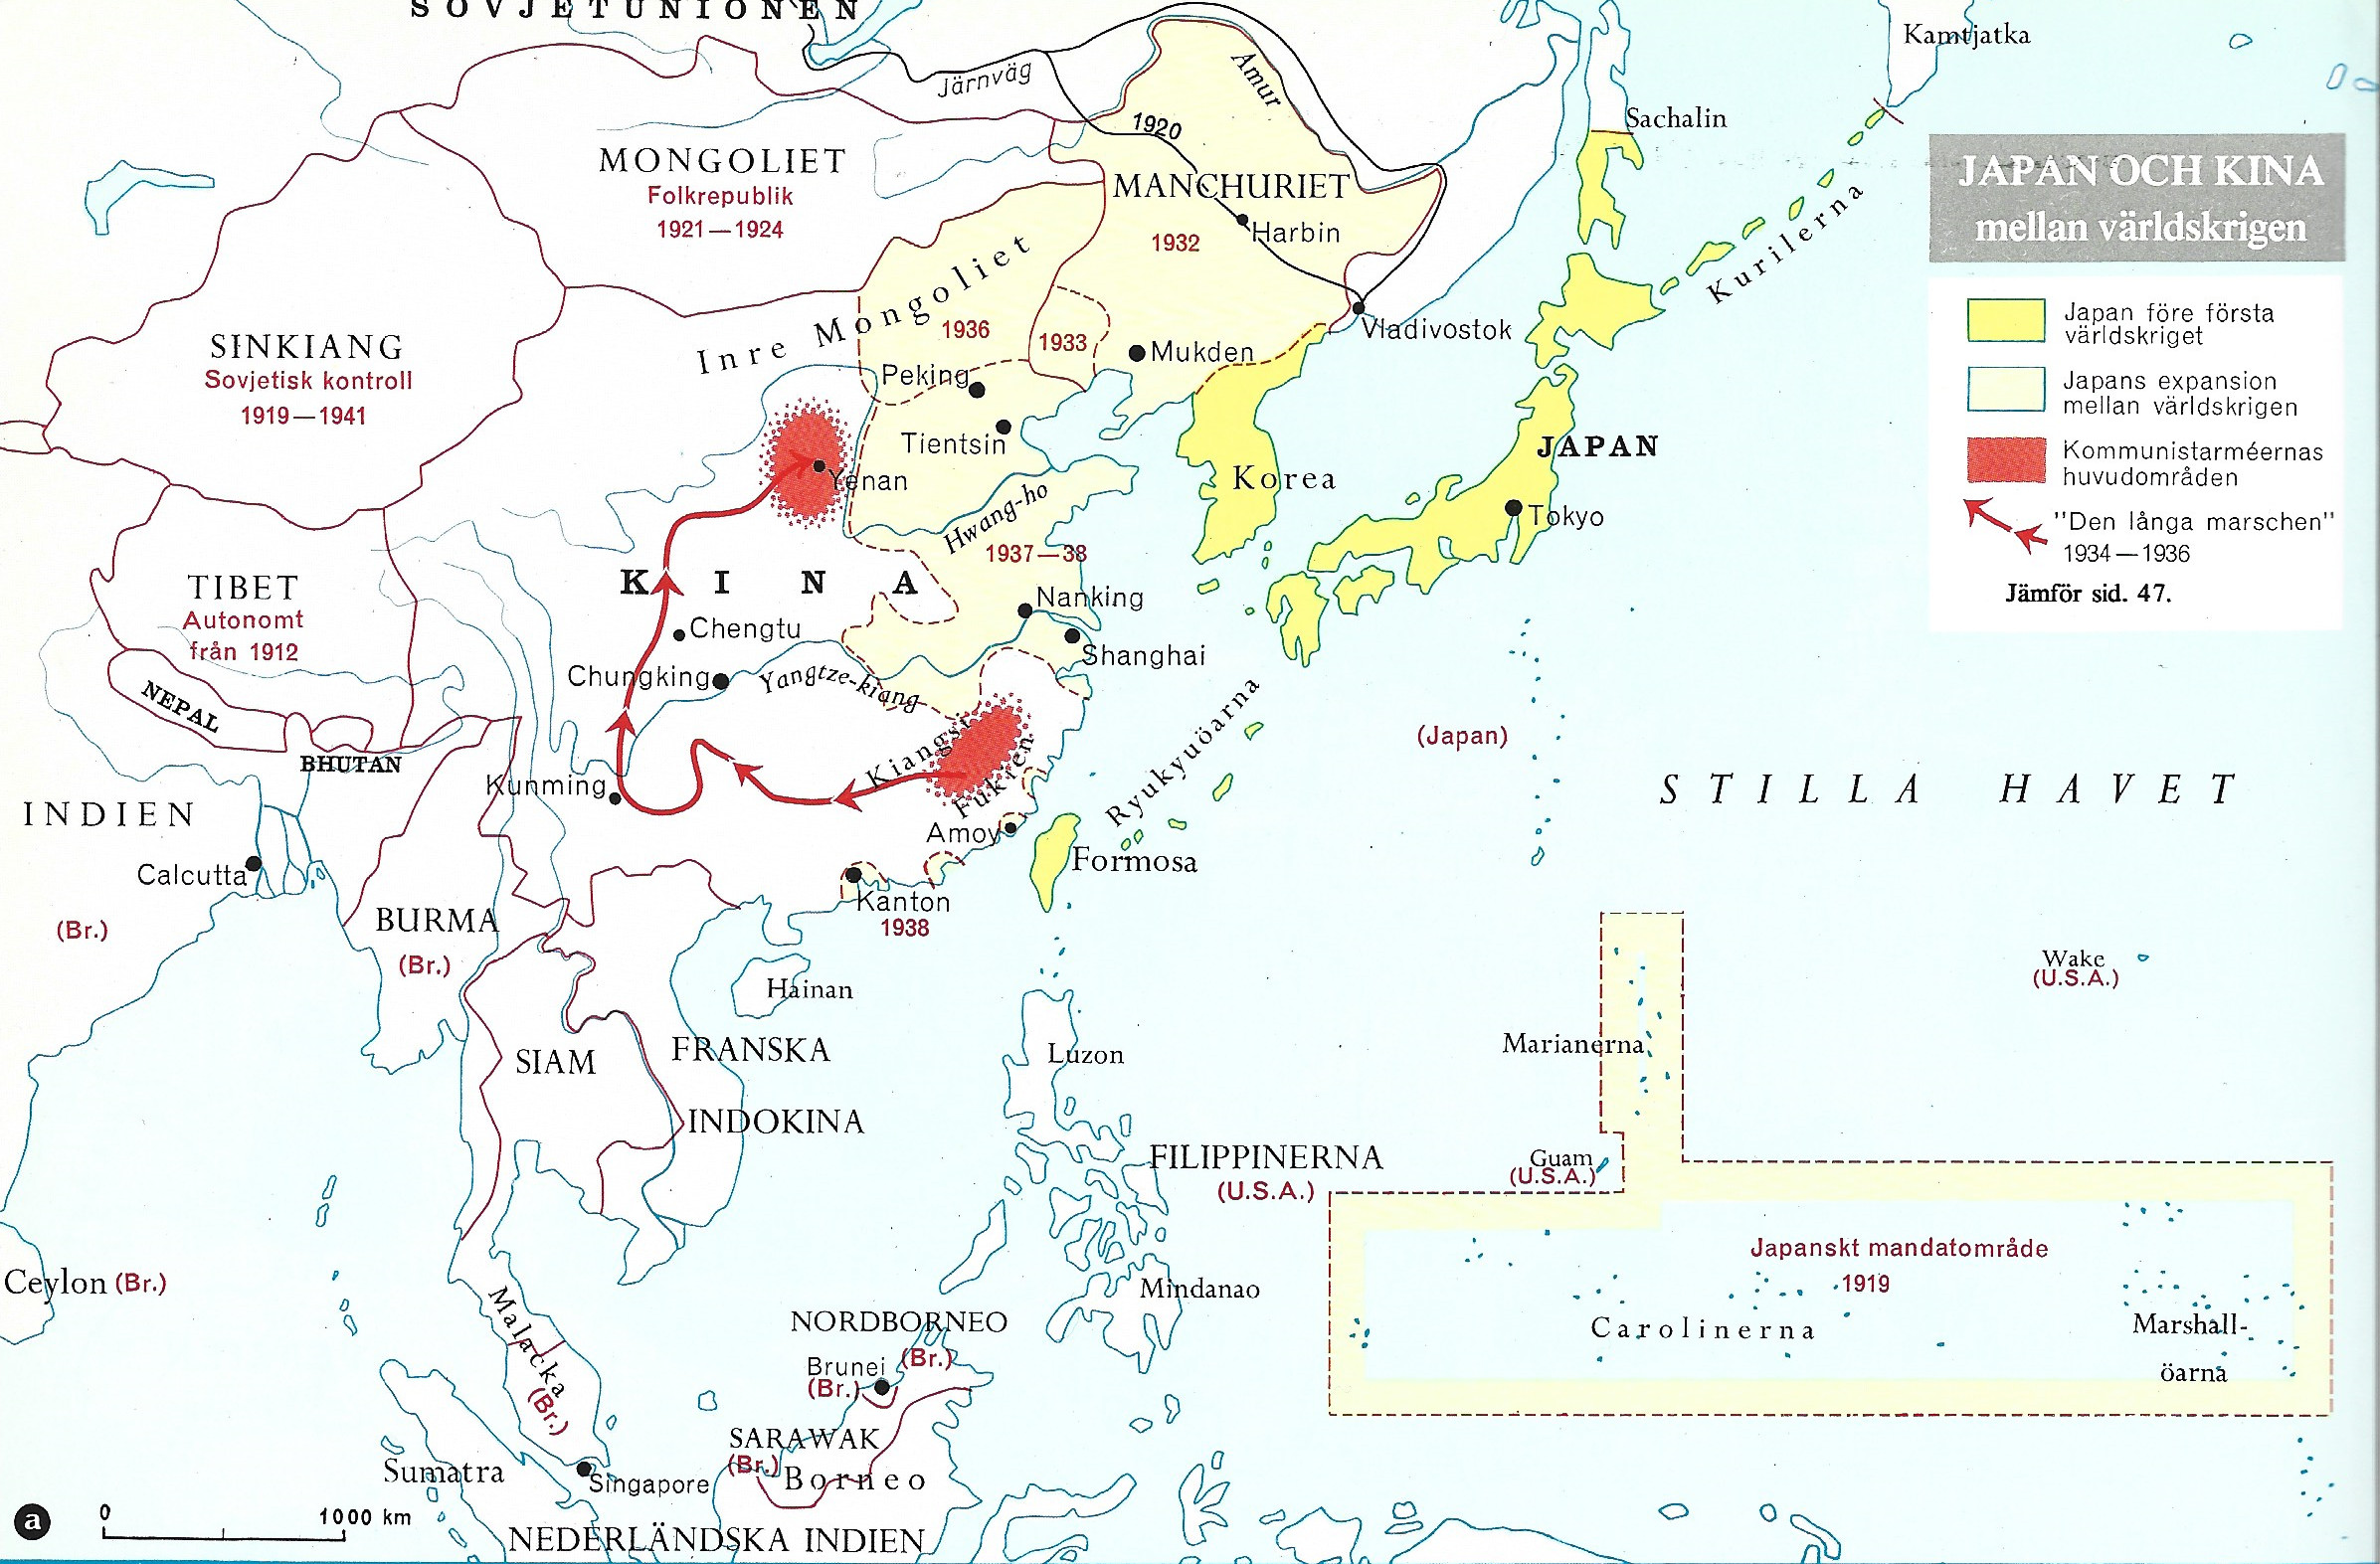 Japan Kina Mellankrigstiden